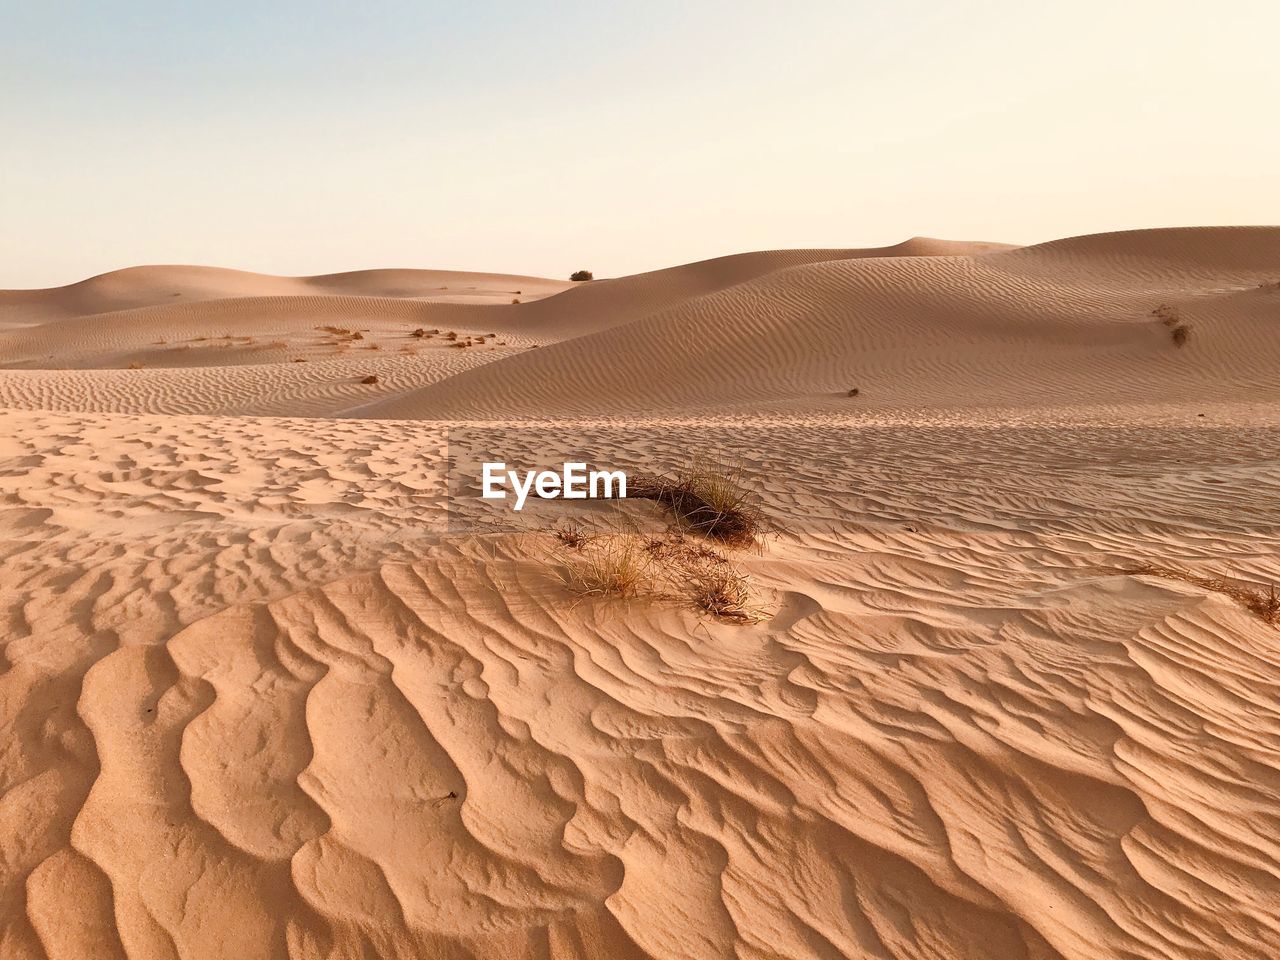 SAND DUNES IN DESERT